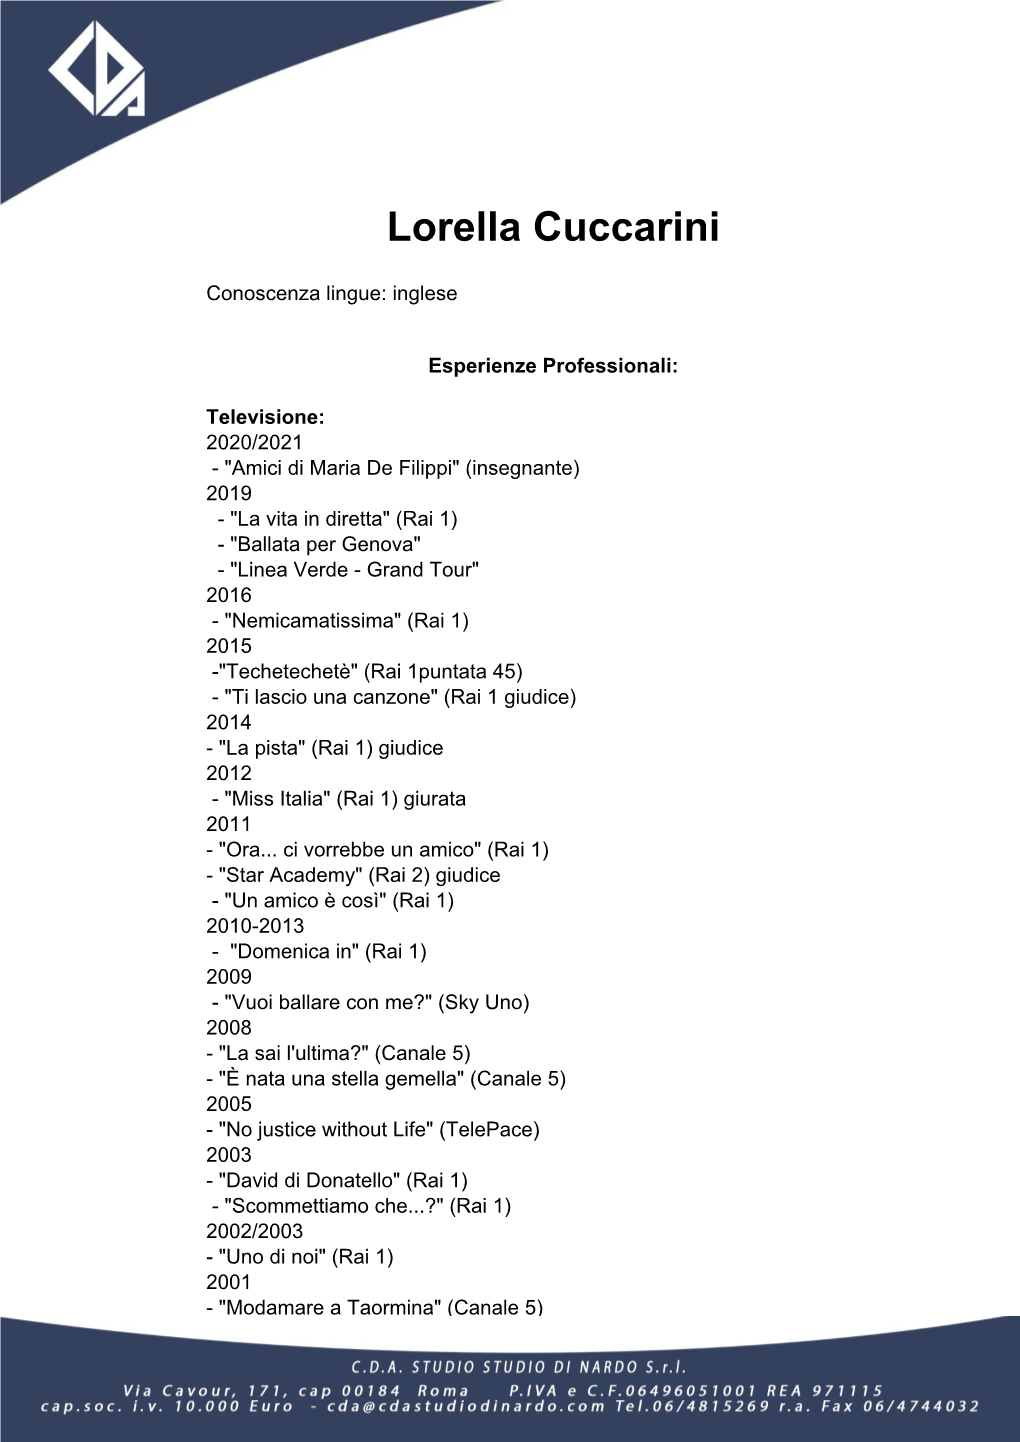 Lorella Cuccarini